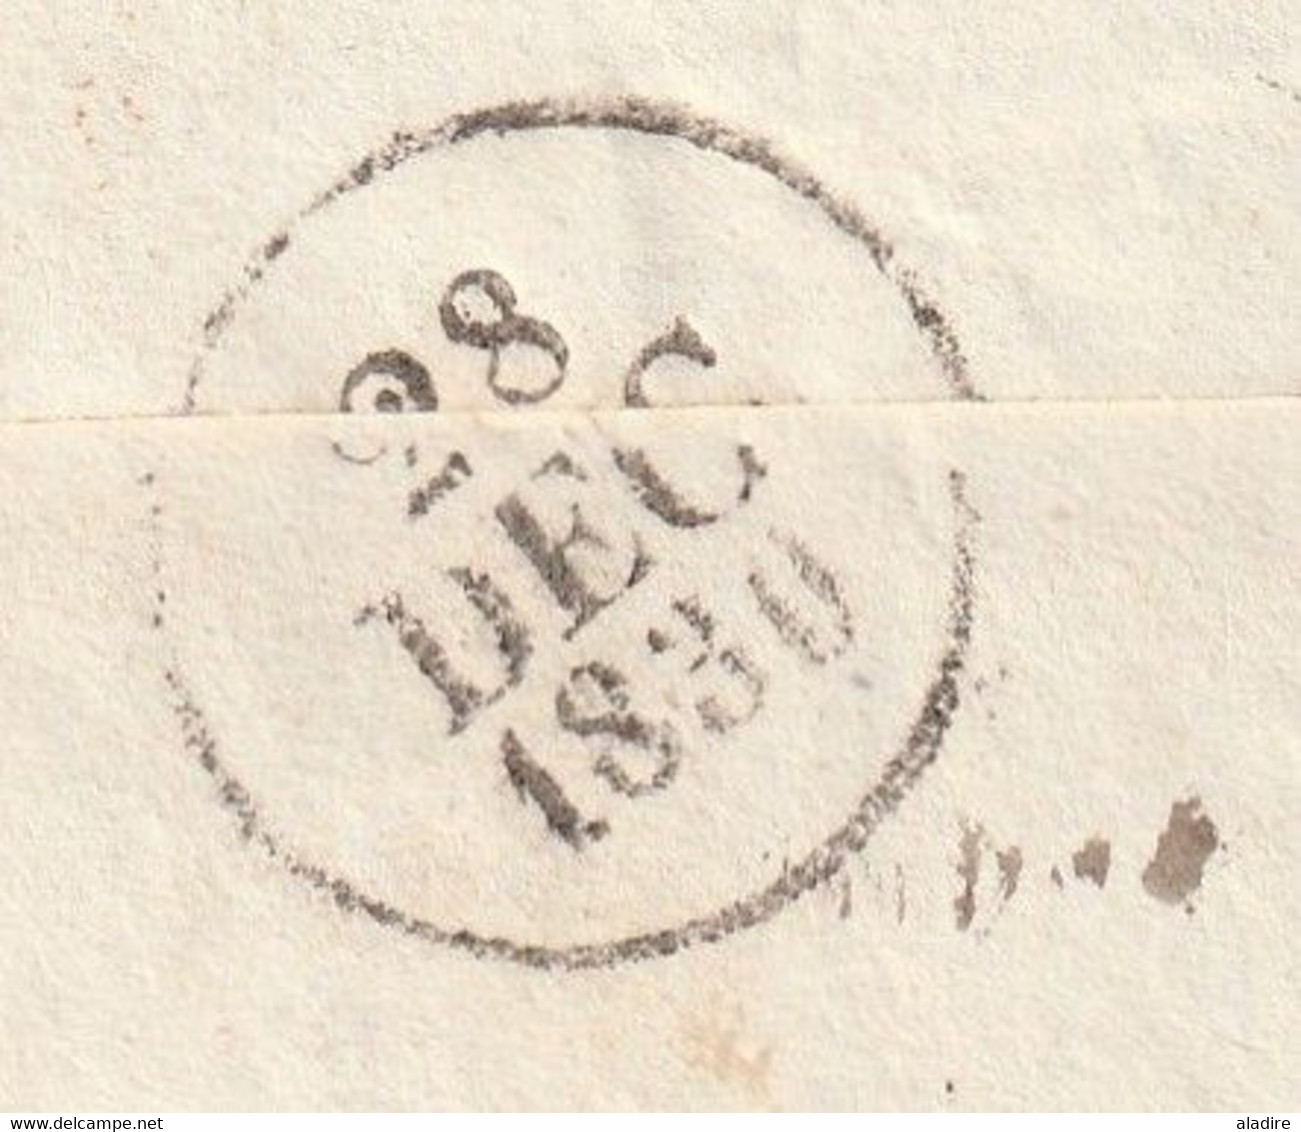 1830 - Lettre pliée avec corresp de 2 pages de TOULOUSE (cad rouge à fleurons) vers Grizole Grisolles, Tarn & Garonne